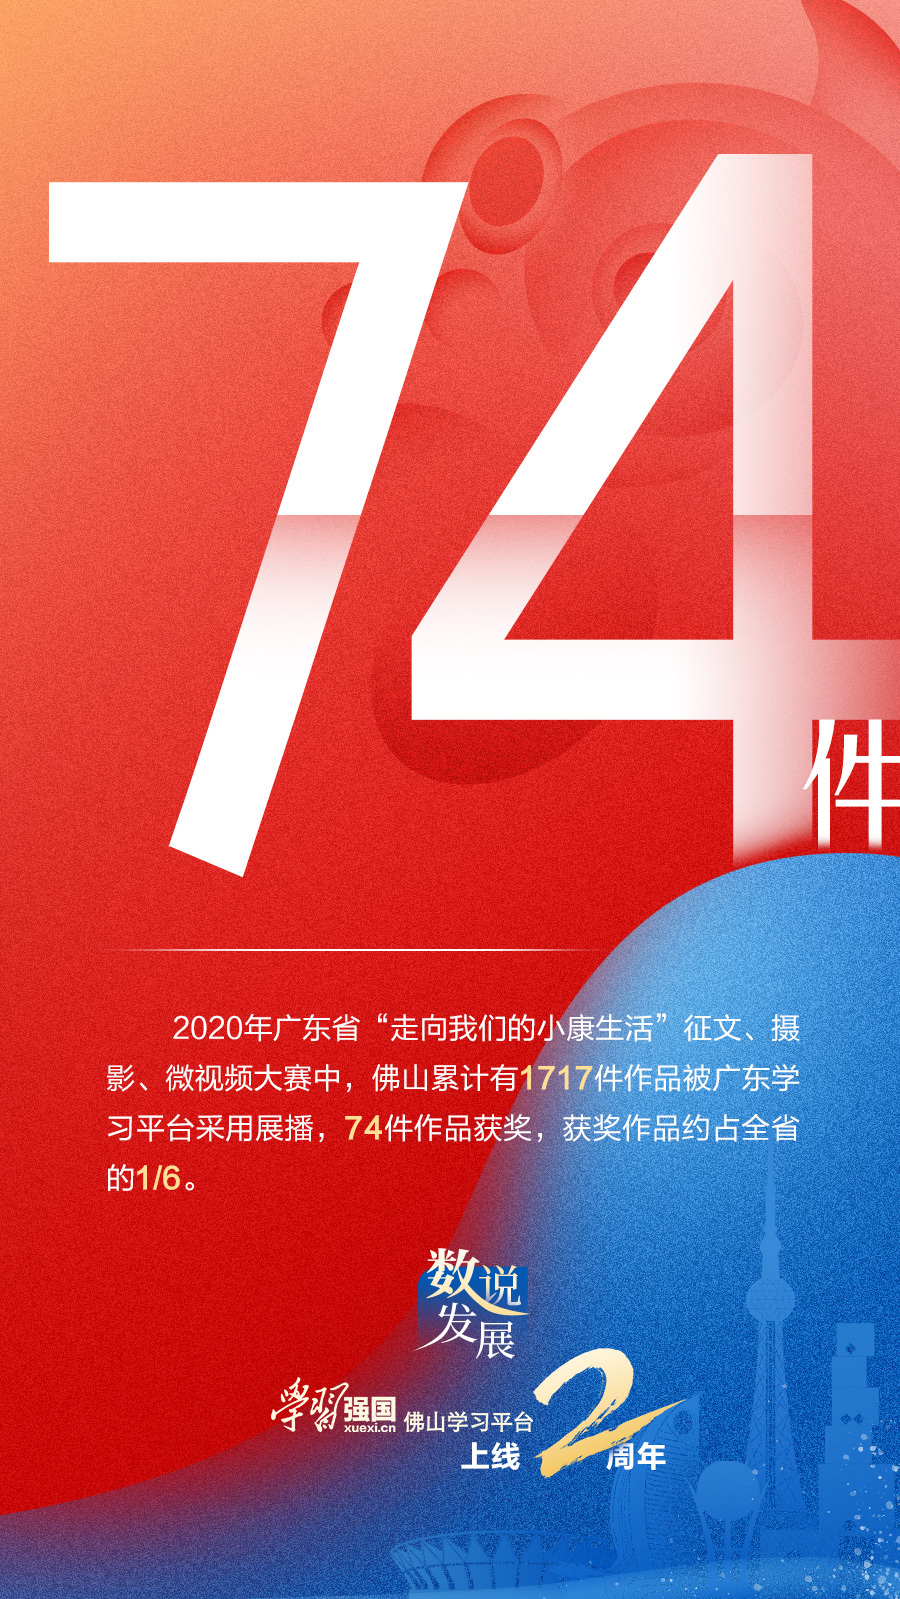 2020年广东省“走向我们的小康生活”征文、摄影、微视频大赛展播情况。（来源：“学习强国”佛山学习平台编辑部）